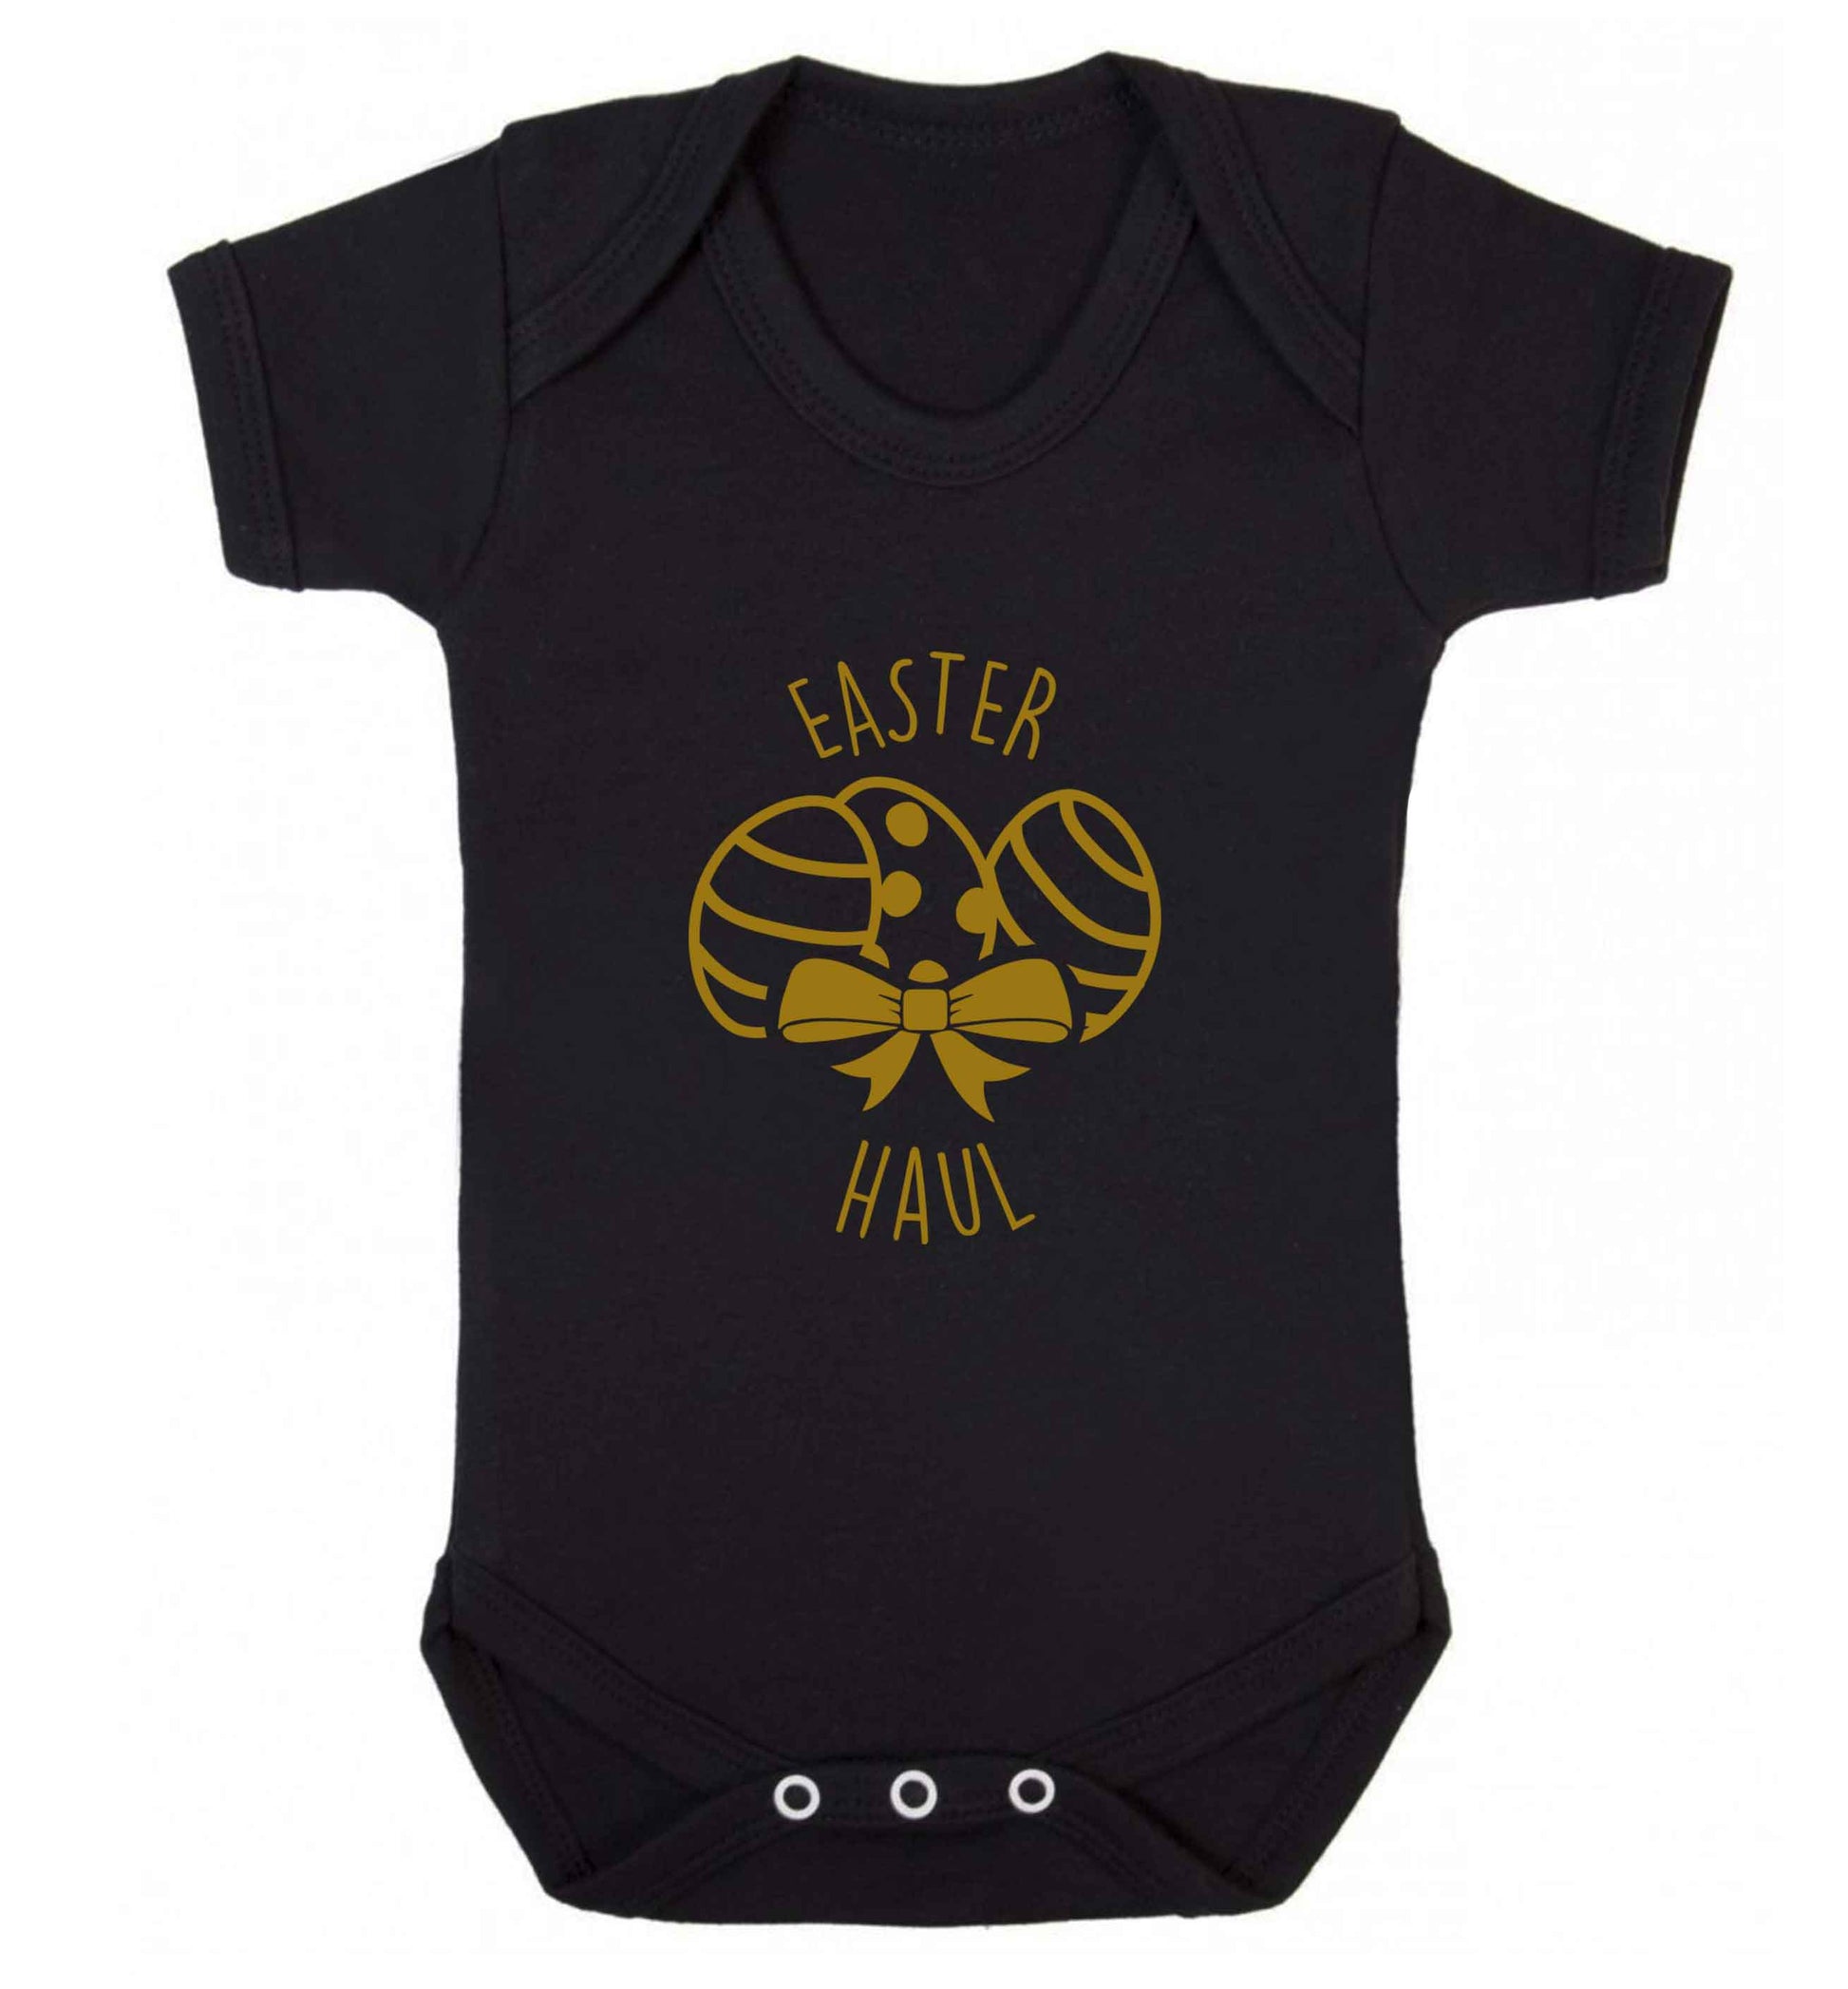 Easter haul baby vest black 18-24 months